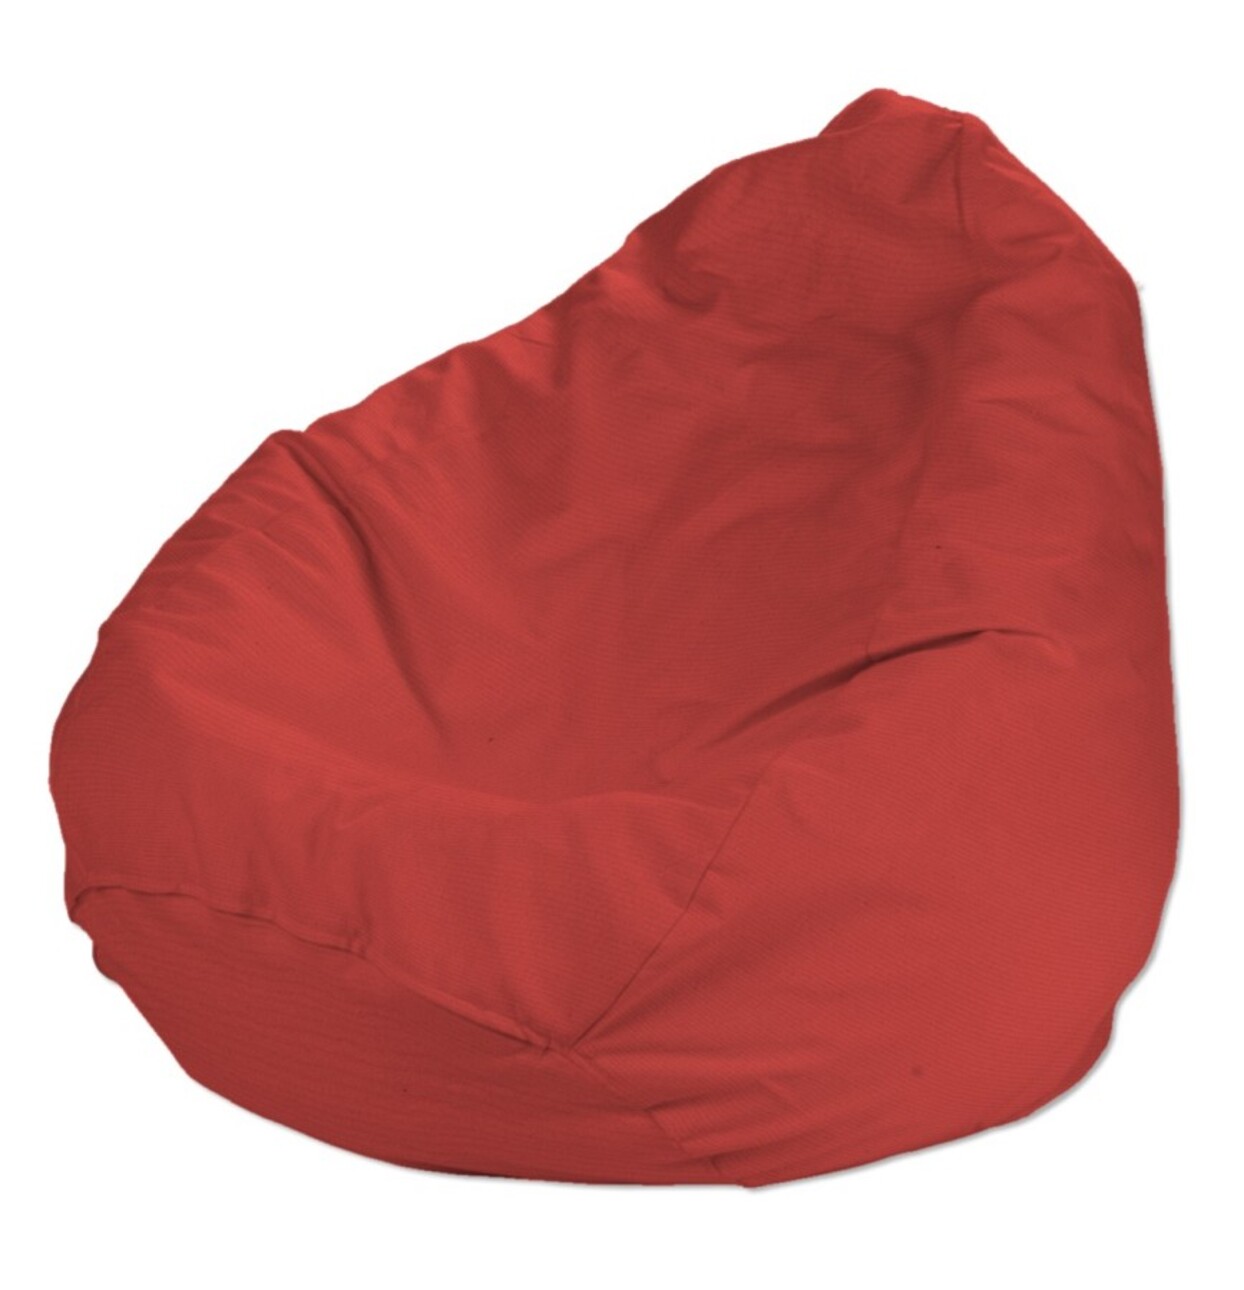 Bezug für Sitzsack, rot, Bezug für Sitzsack Ø60 x 105 cm, Loneta (133-43) günstig online kaufen